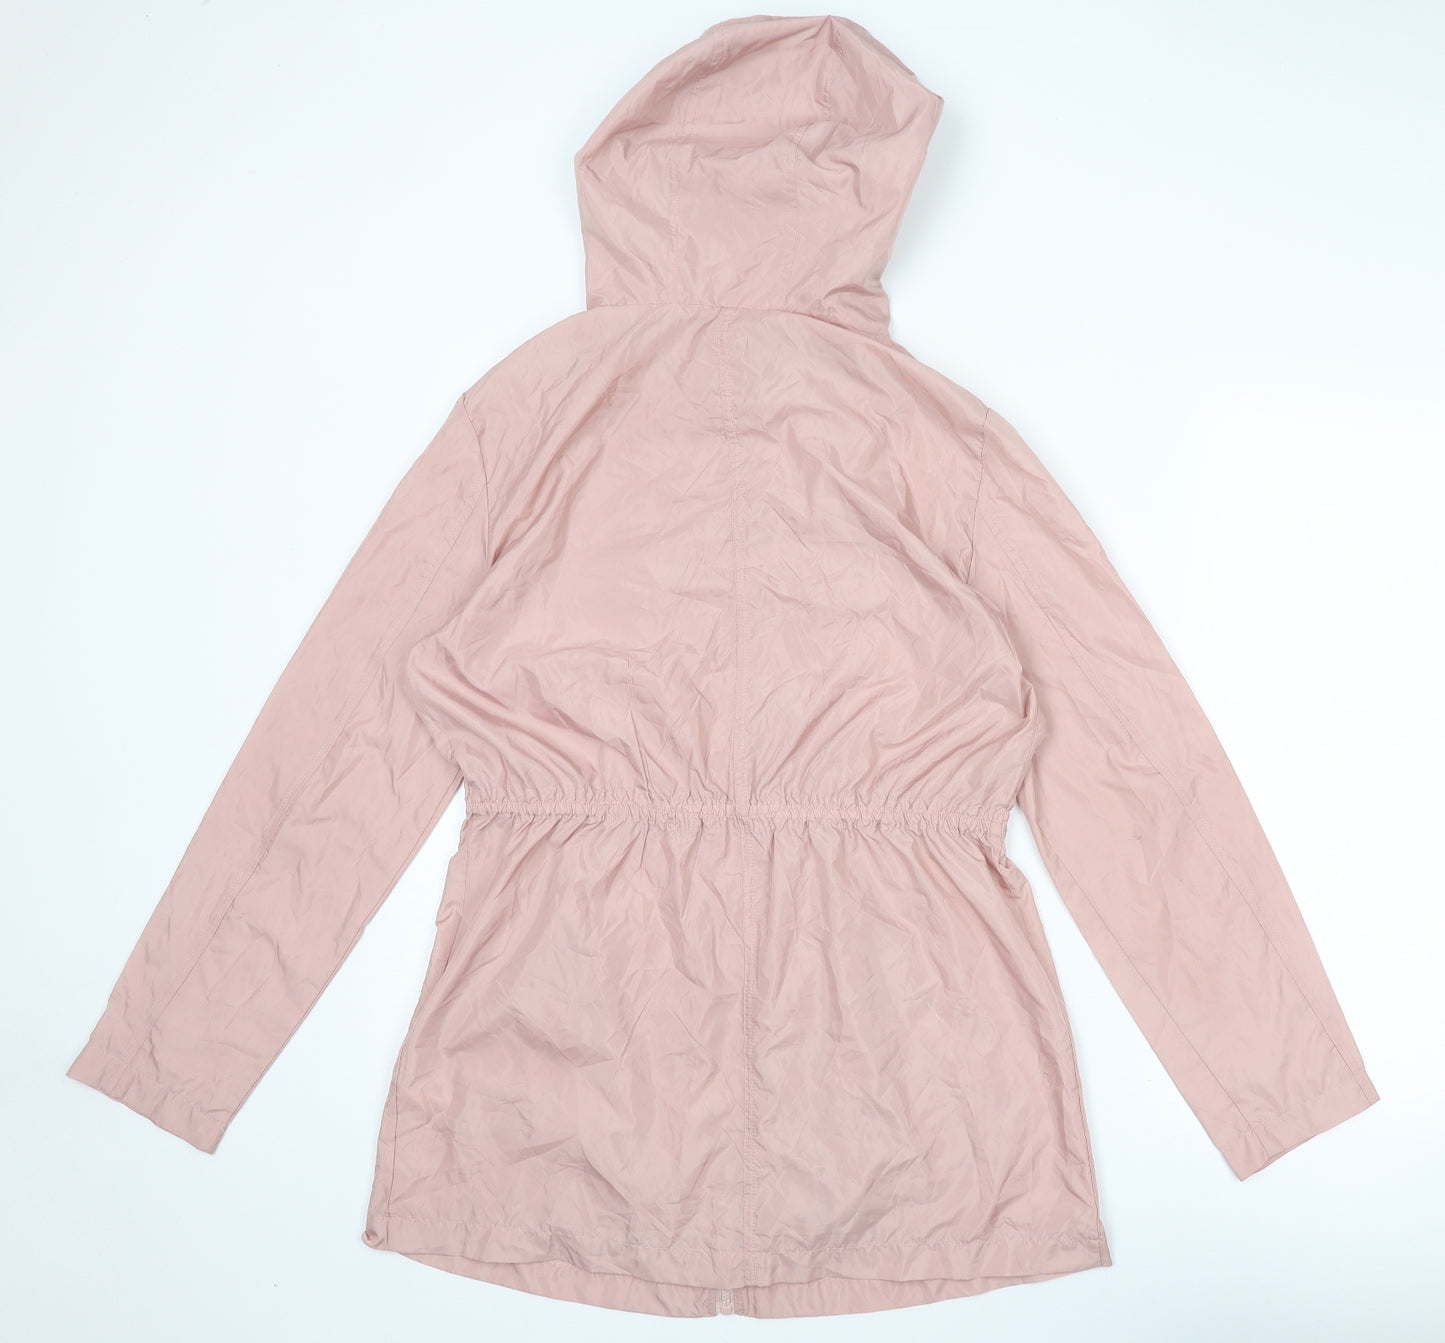 New Look Girls Pink Basic Coat Coat Size 14-15 Years Zip